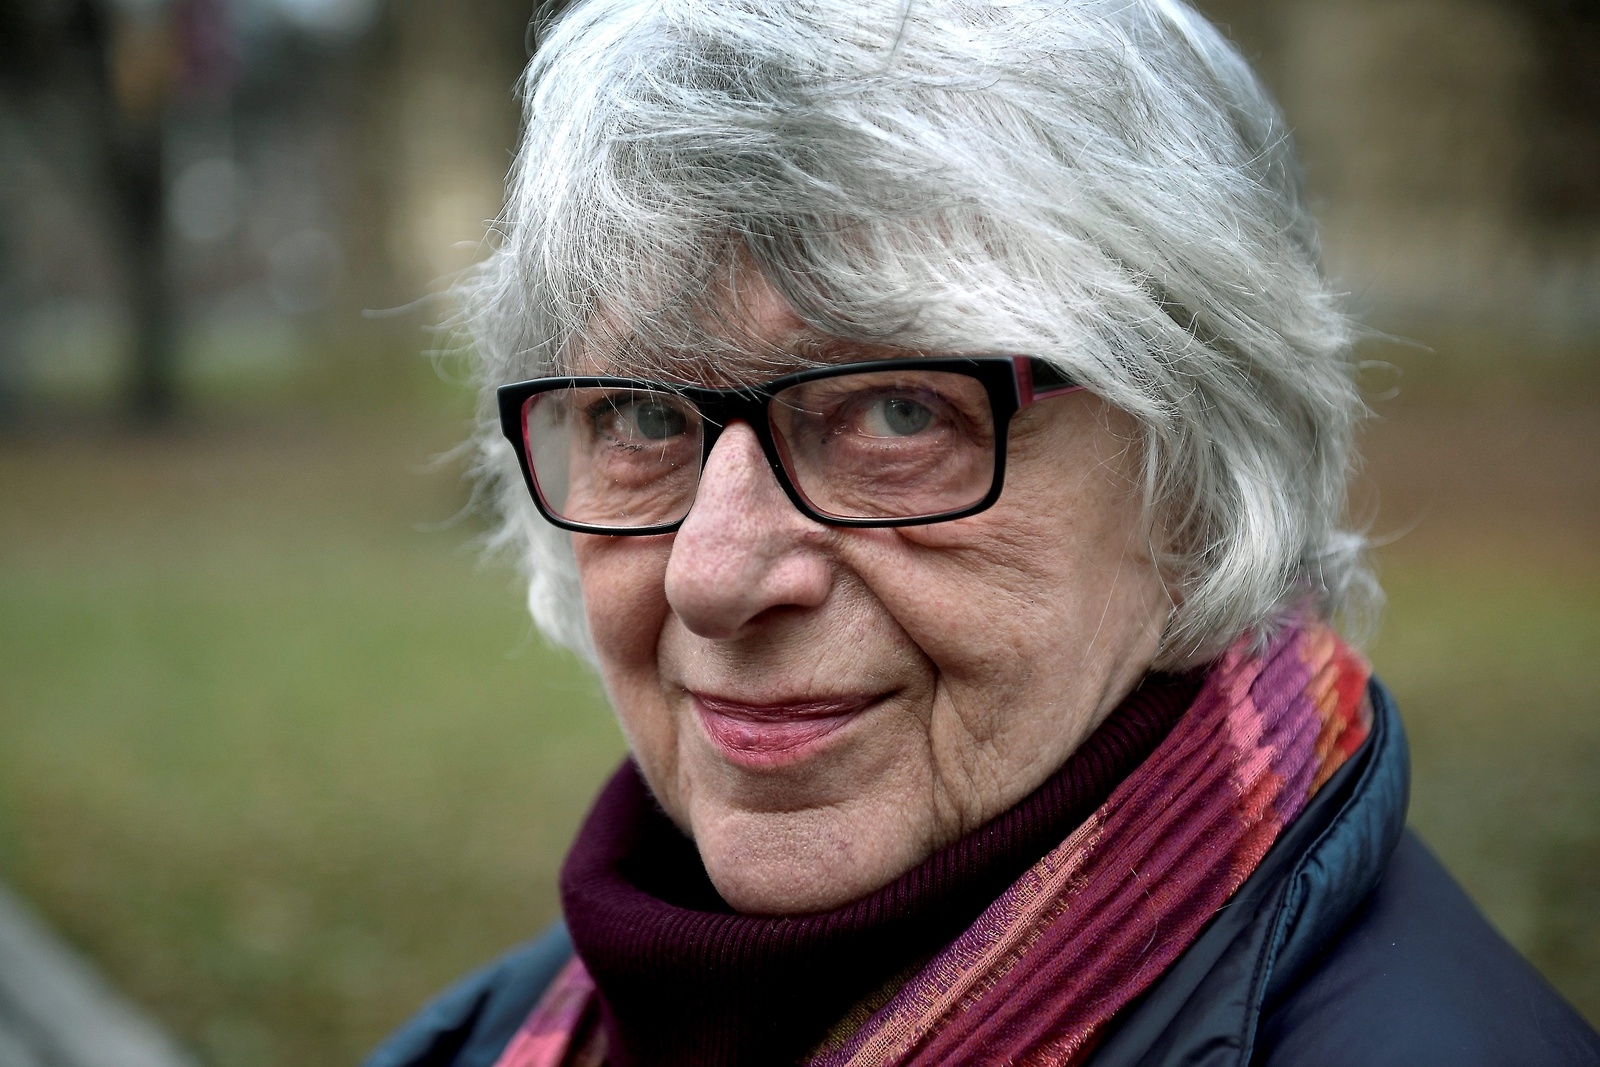 Scriptan och filmproducenten Katinka Faragó fyller 80 år.
Foto: Janerik Henriksson/TT